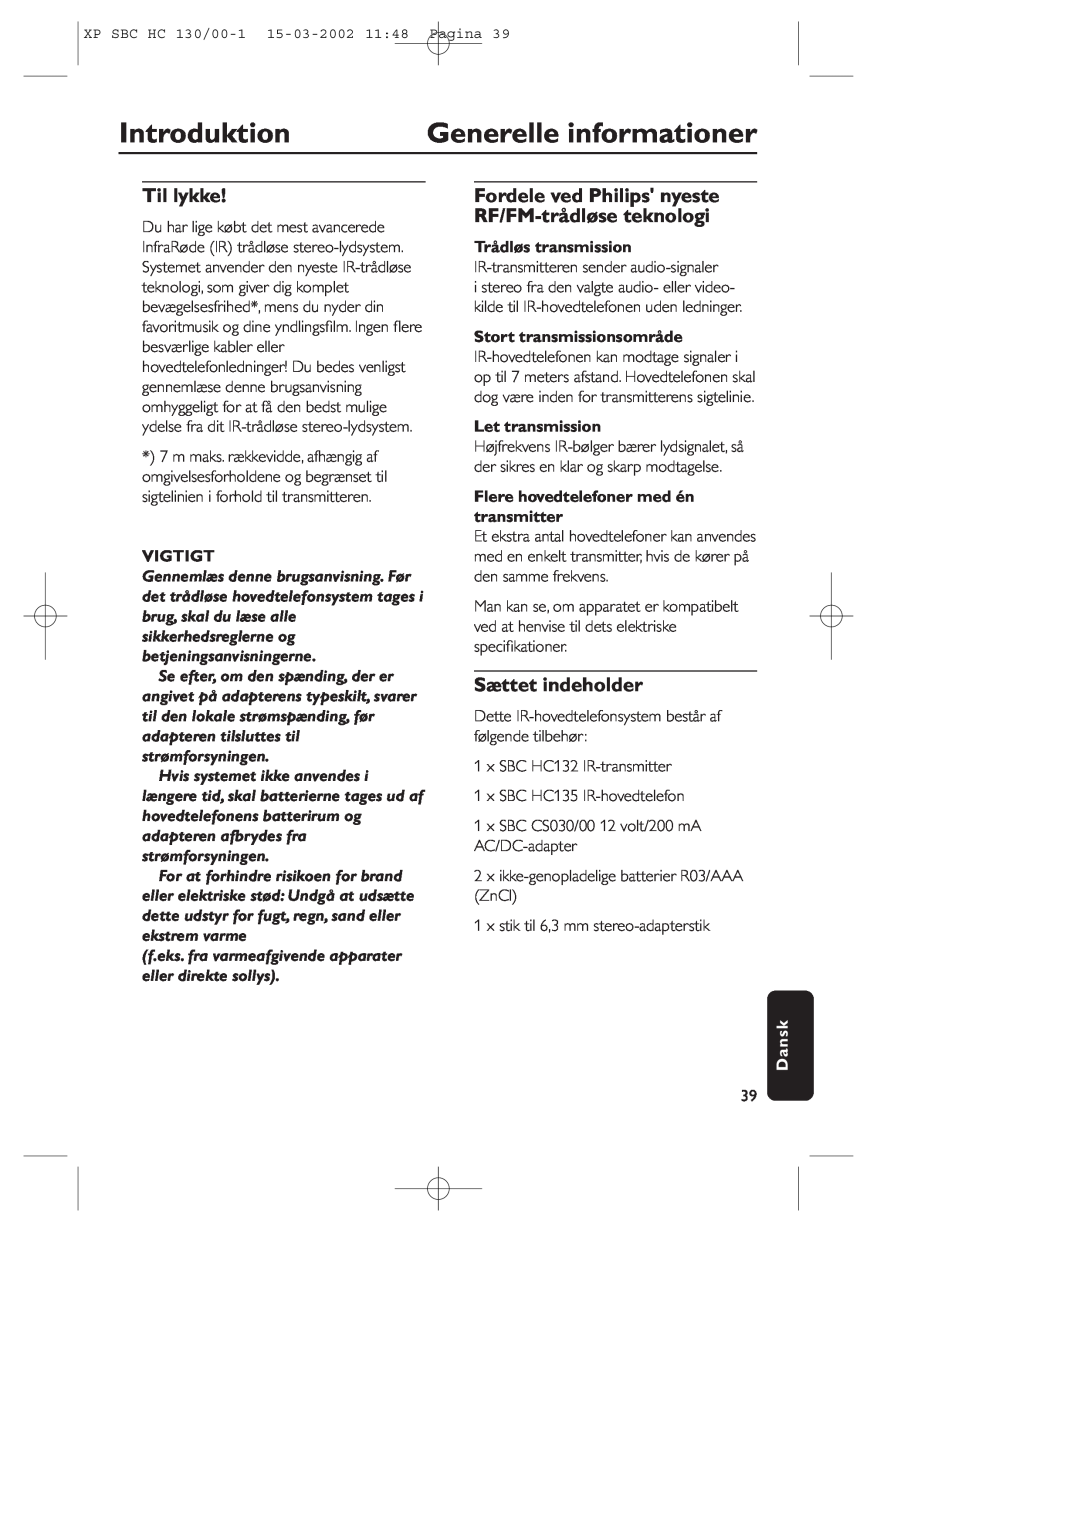 Philips SBC HC130 manual Introduktion, Generelle informationer, Til lykke, Sættet indeholder, Vigtigt, Trådløs transmission 